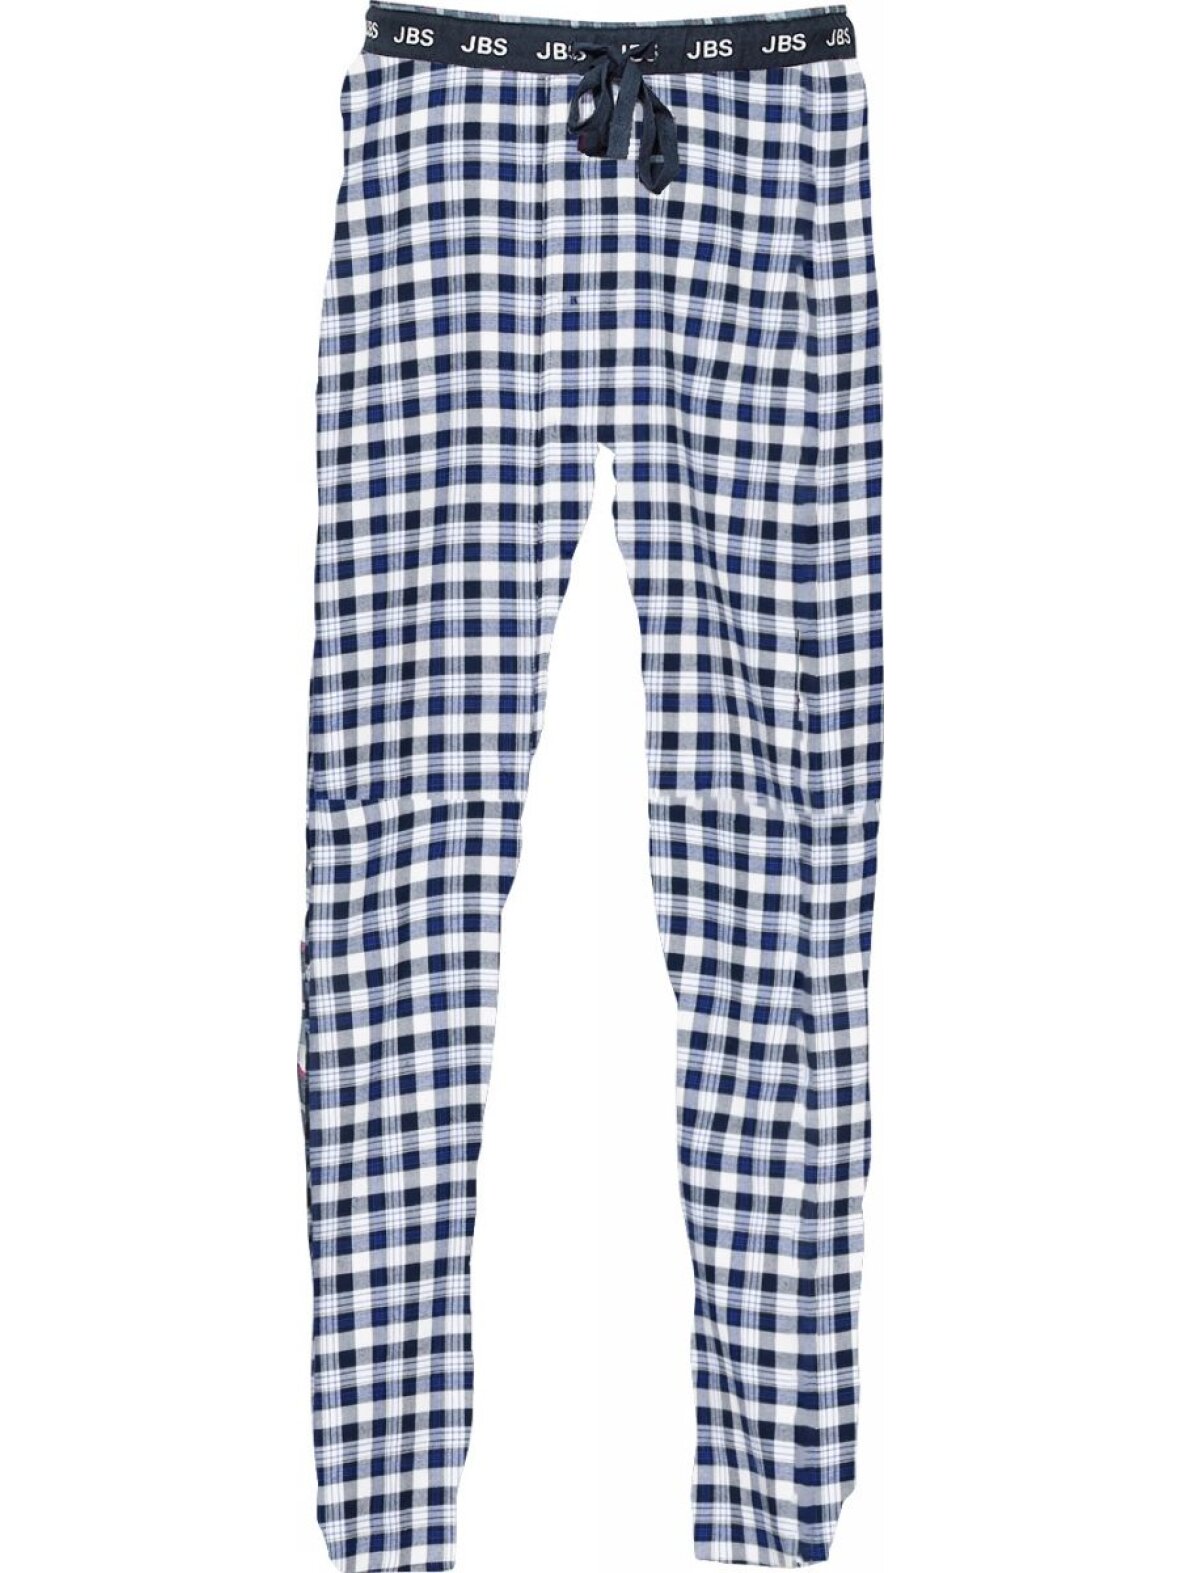 CC Christensen - Pyjamasbukser fra